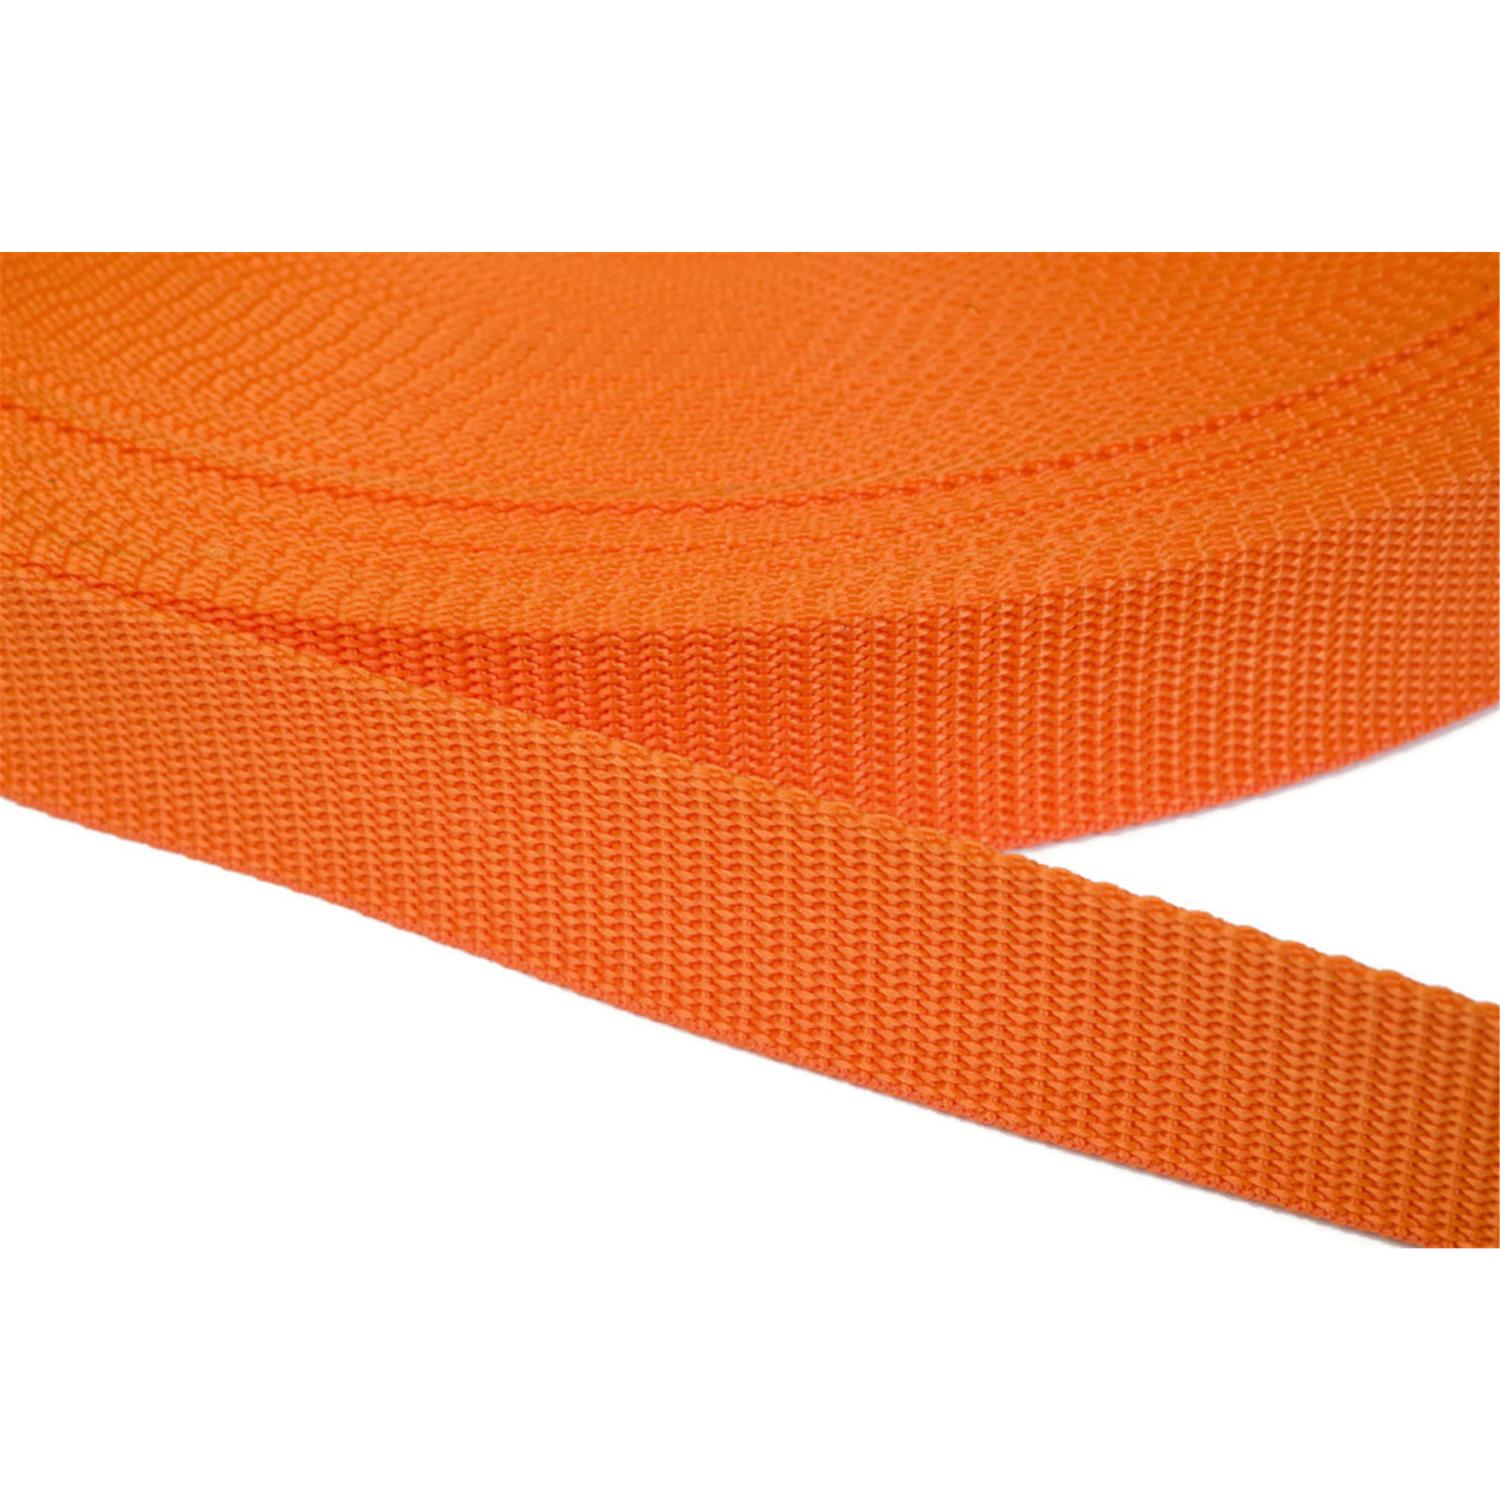 Gurtband 10mm breit aus Polypropylen in 41 Farben 11 - orange 12 Meter